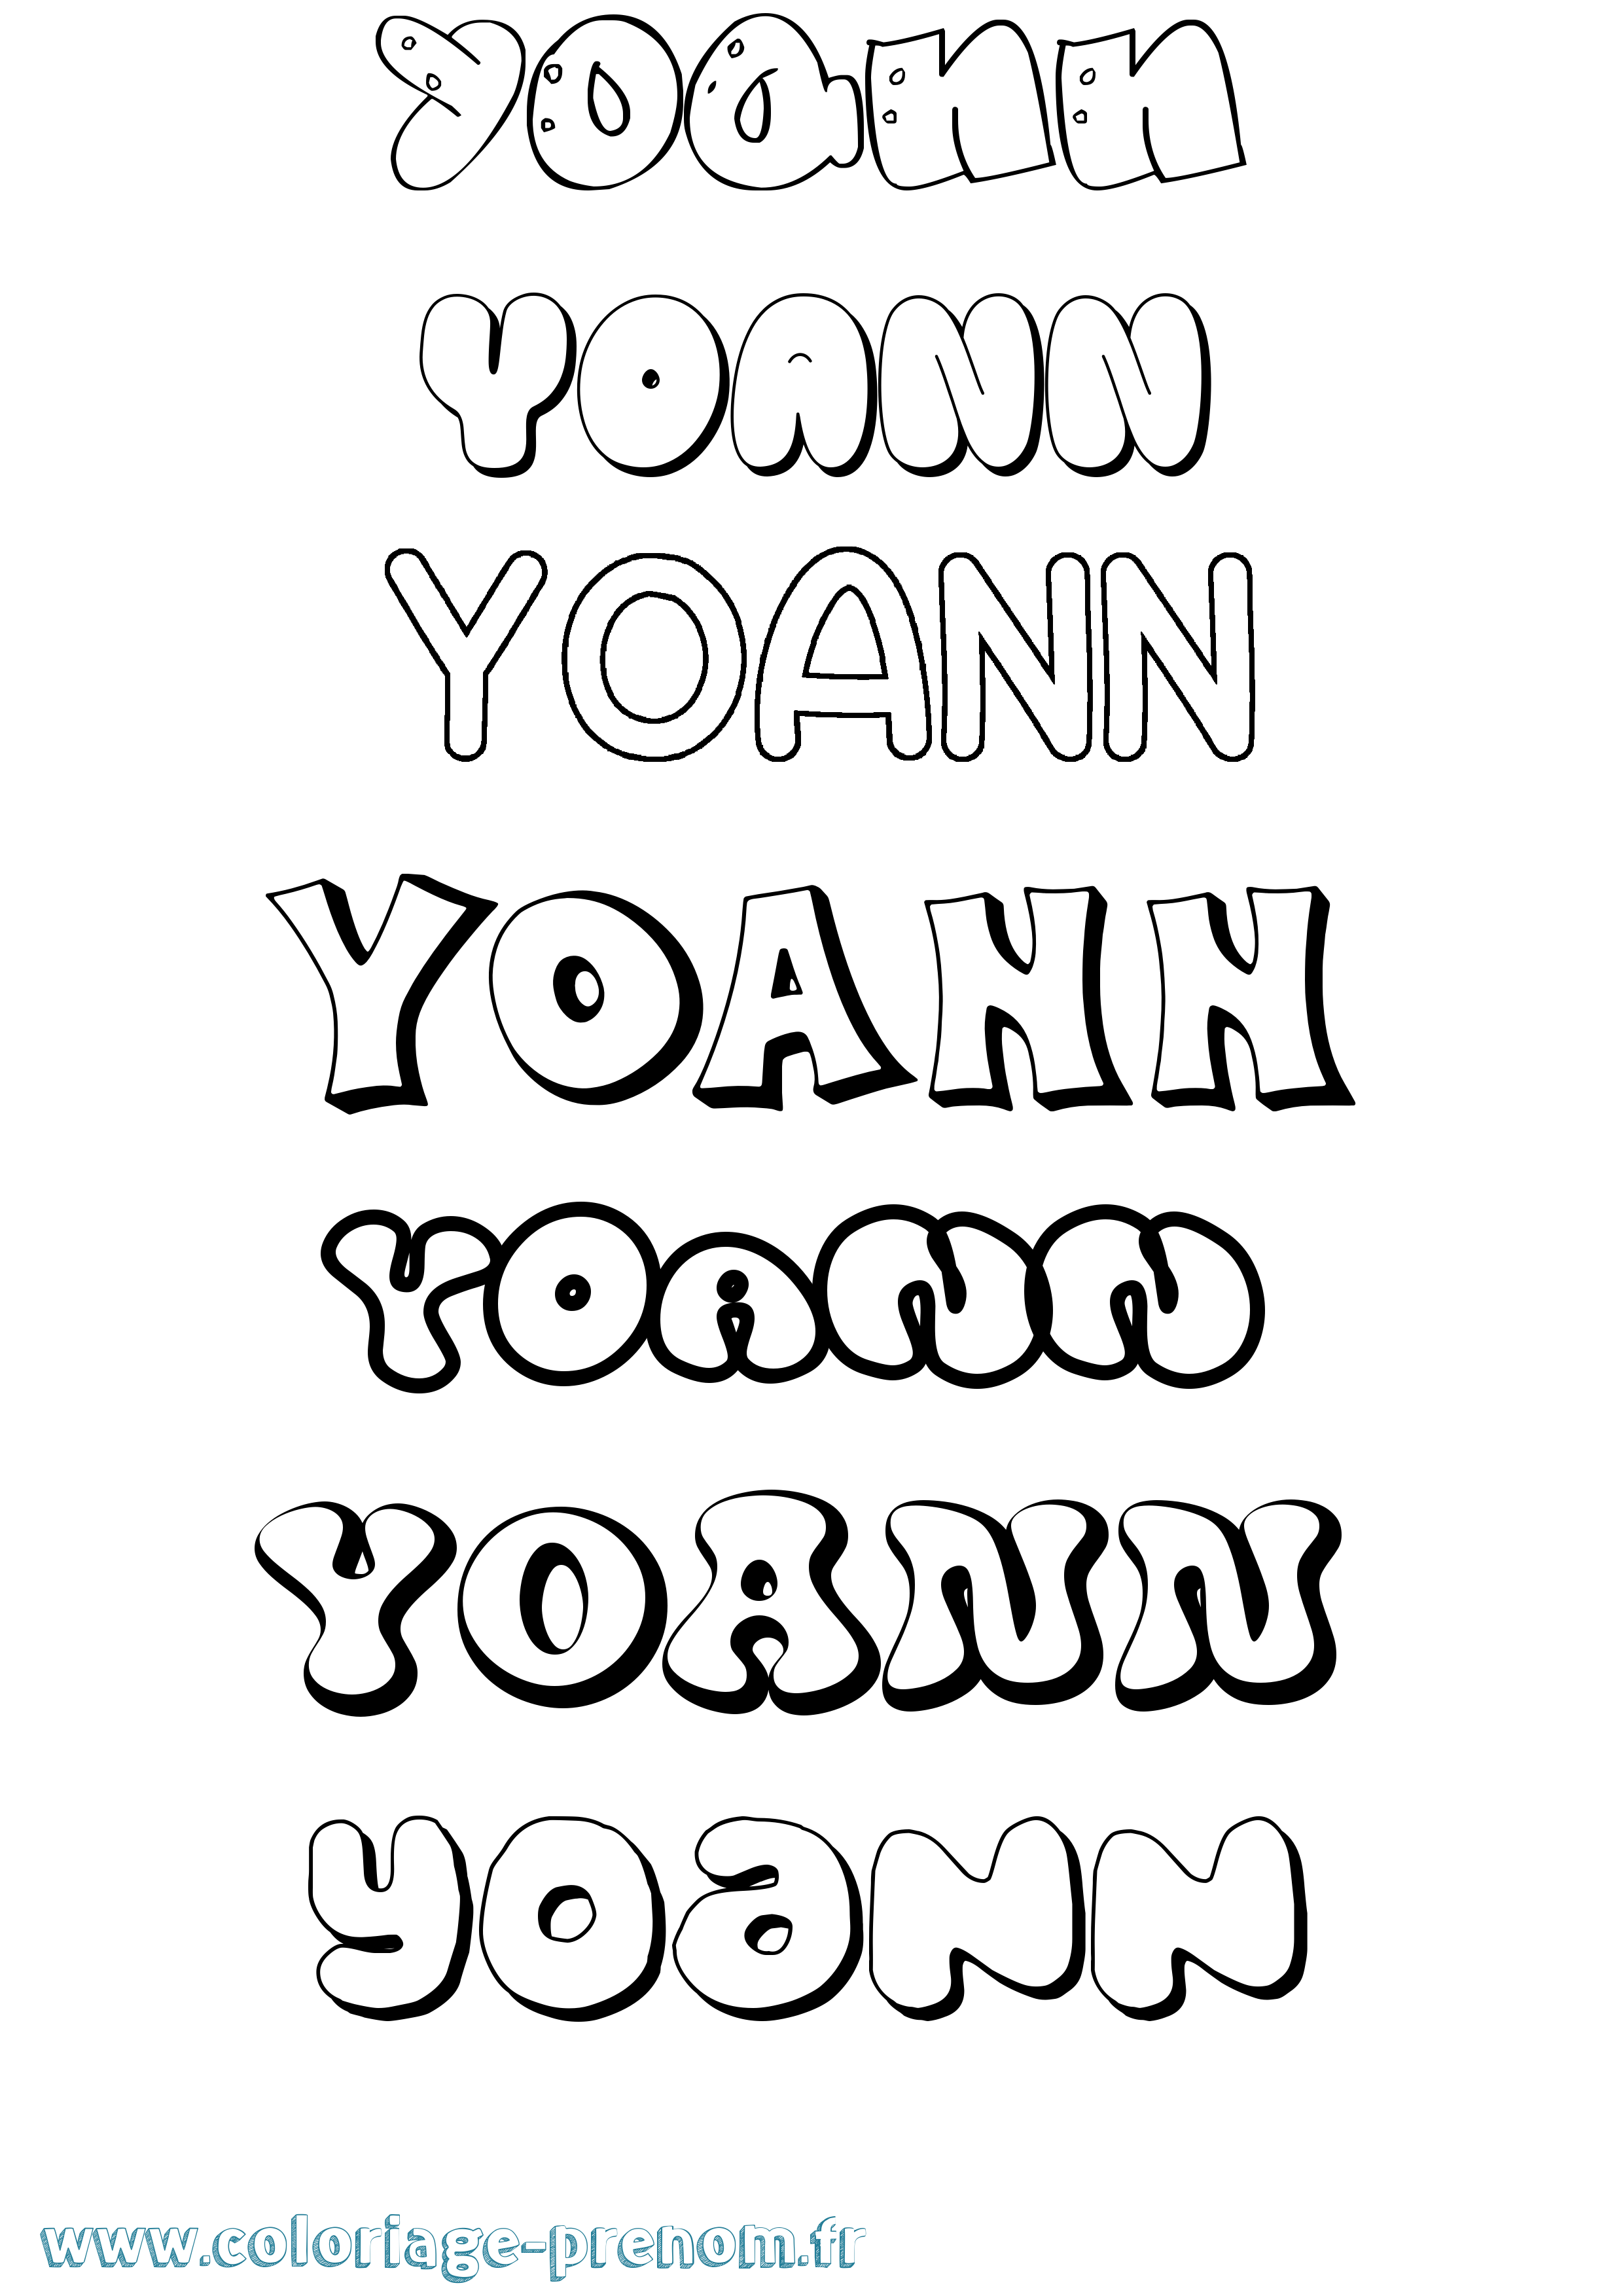 Coloriage prénom Yoann Bubble